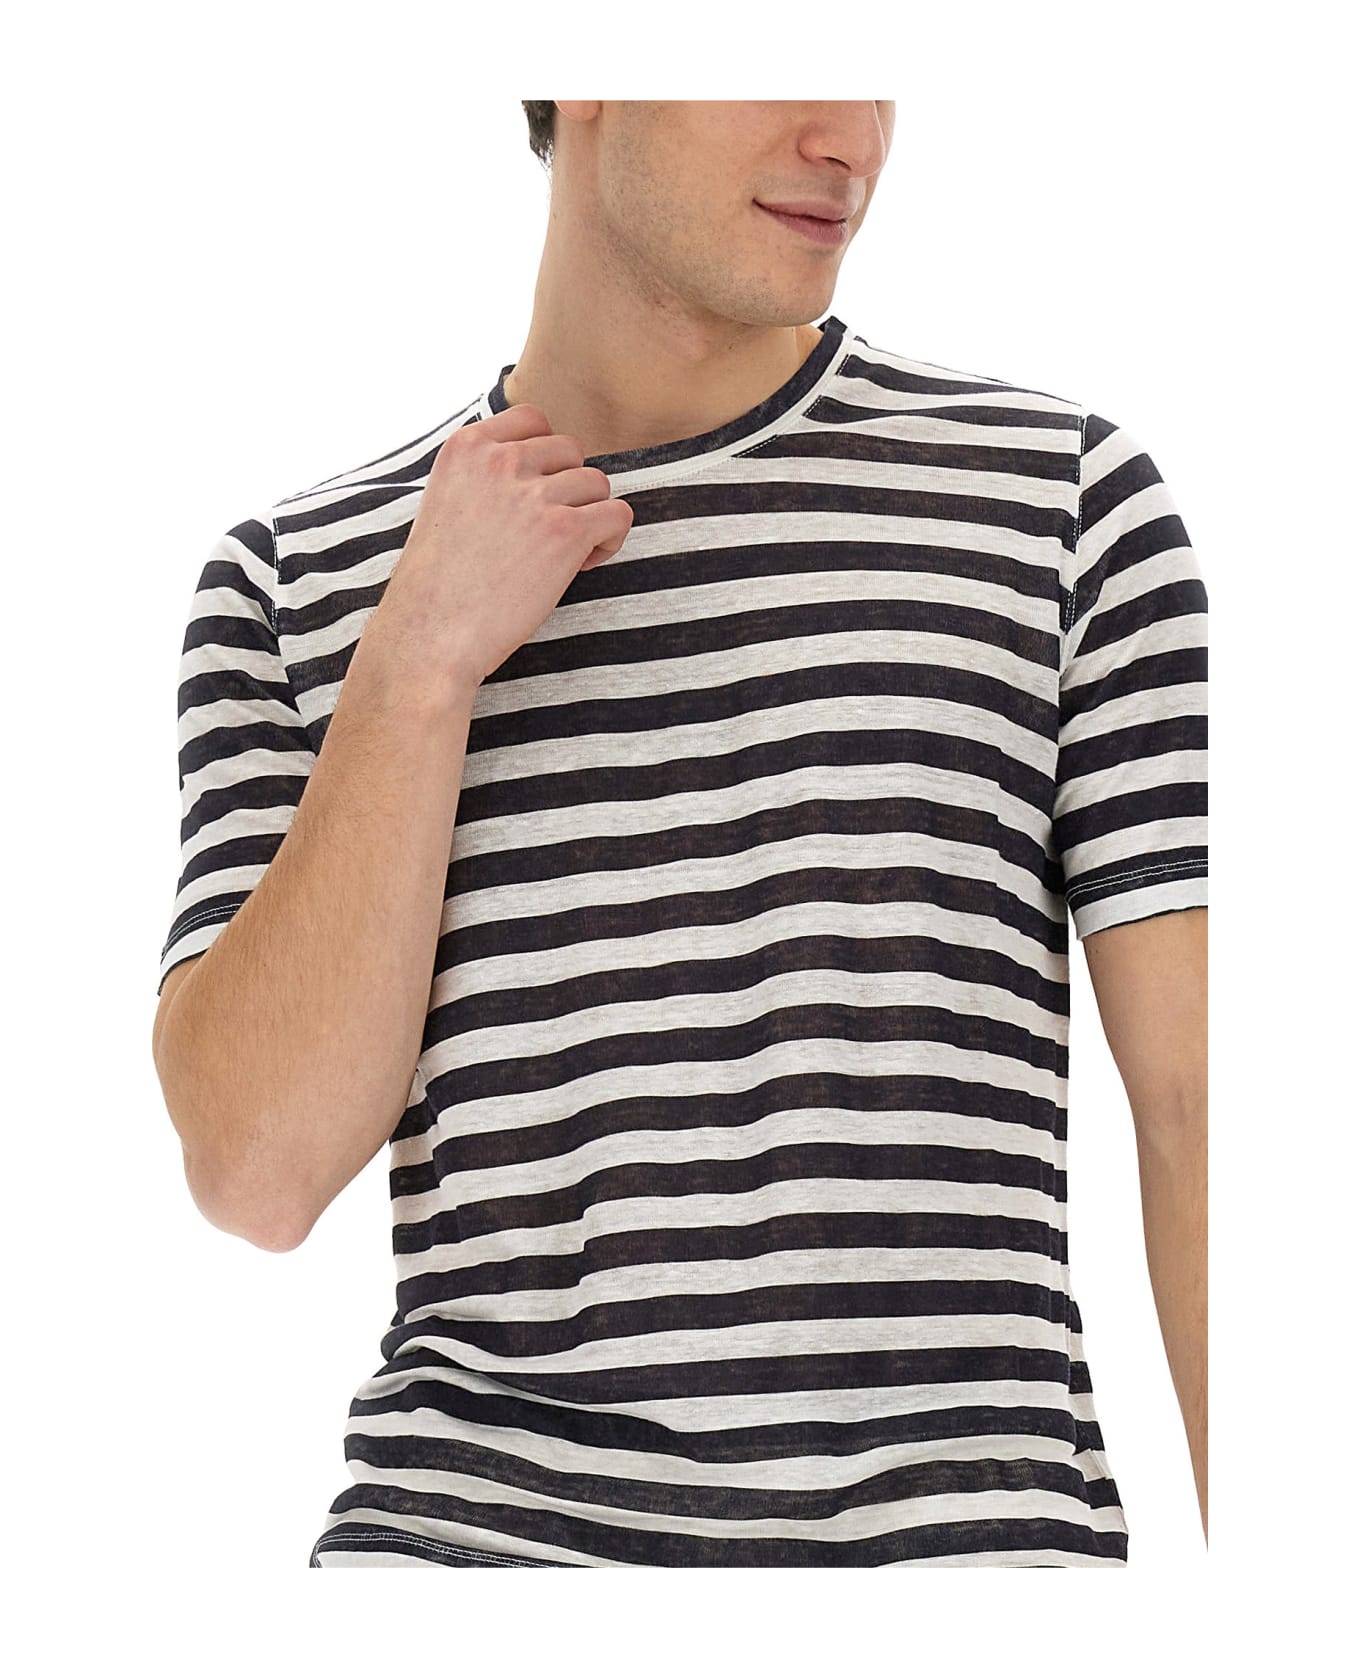 120% Lino Striped T-shirt